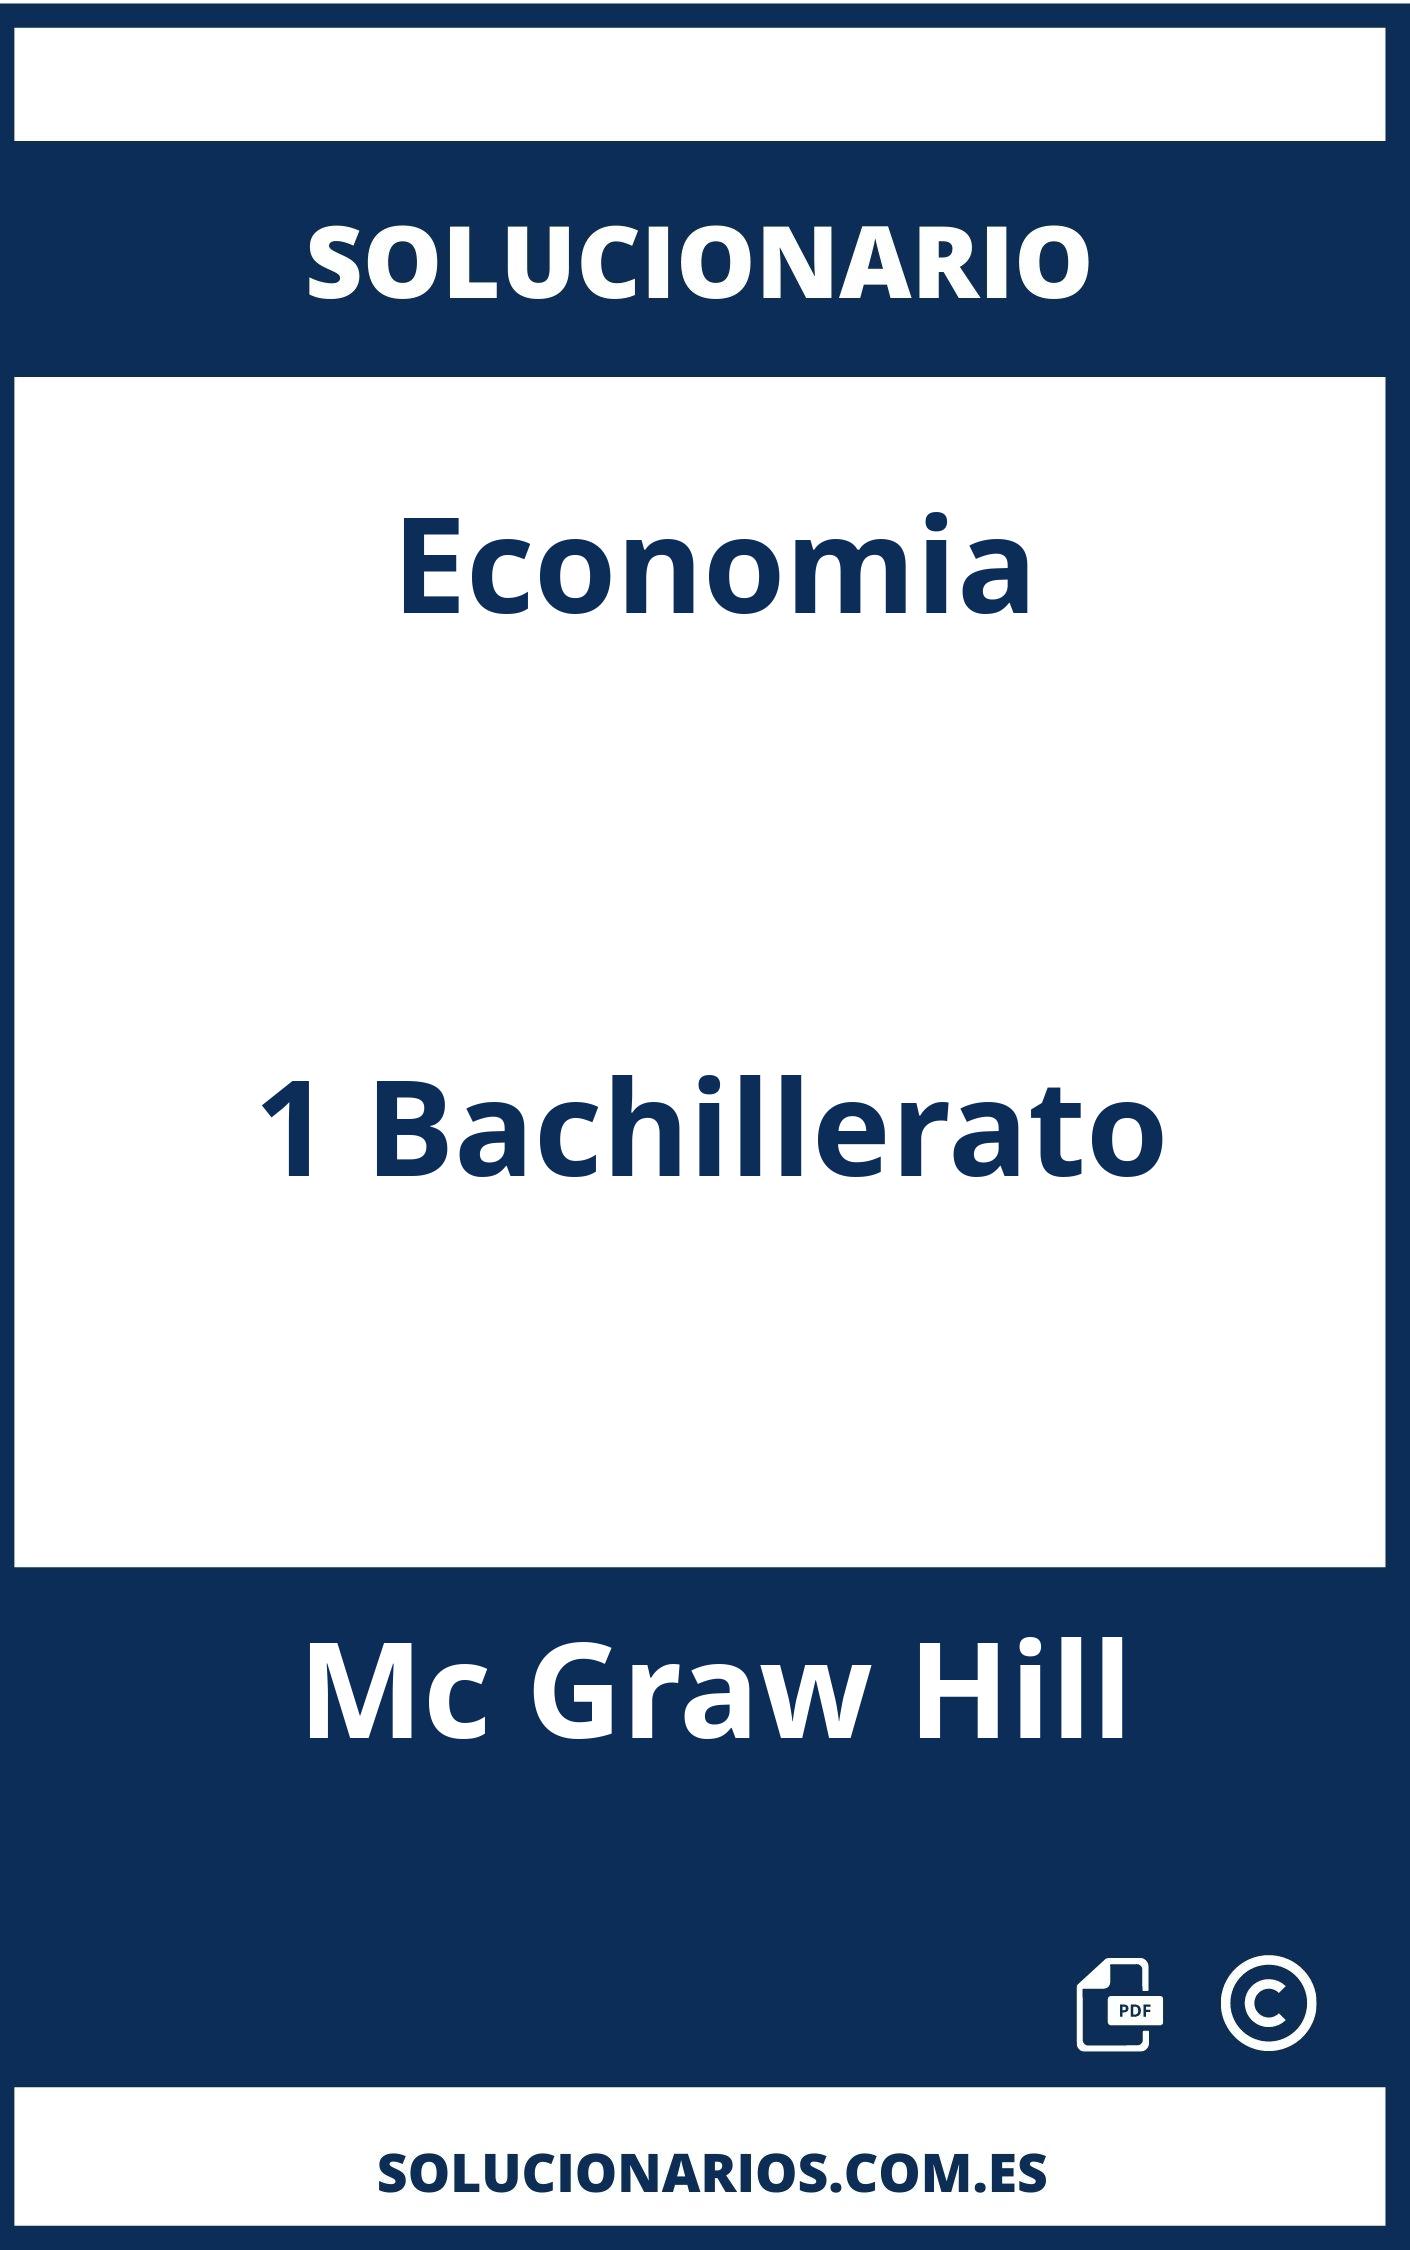 Solucionario Economia 1 Bachillerato Mc Graw Hill